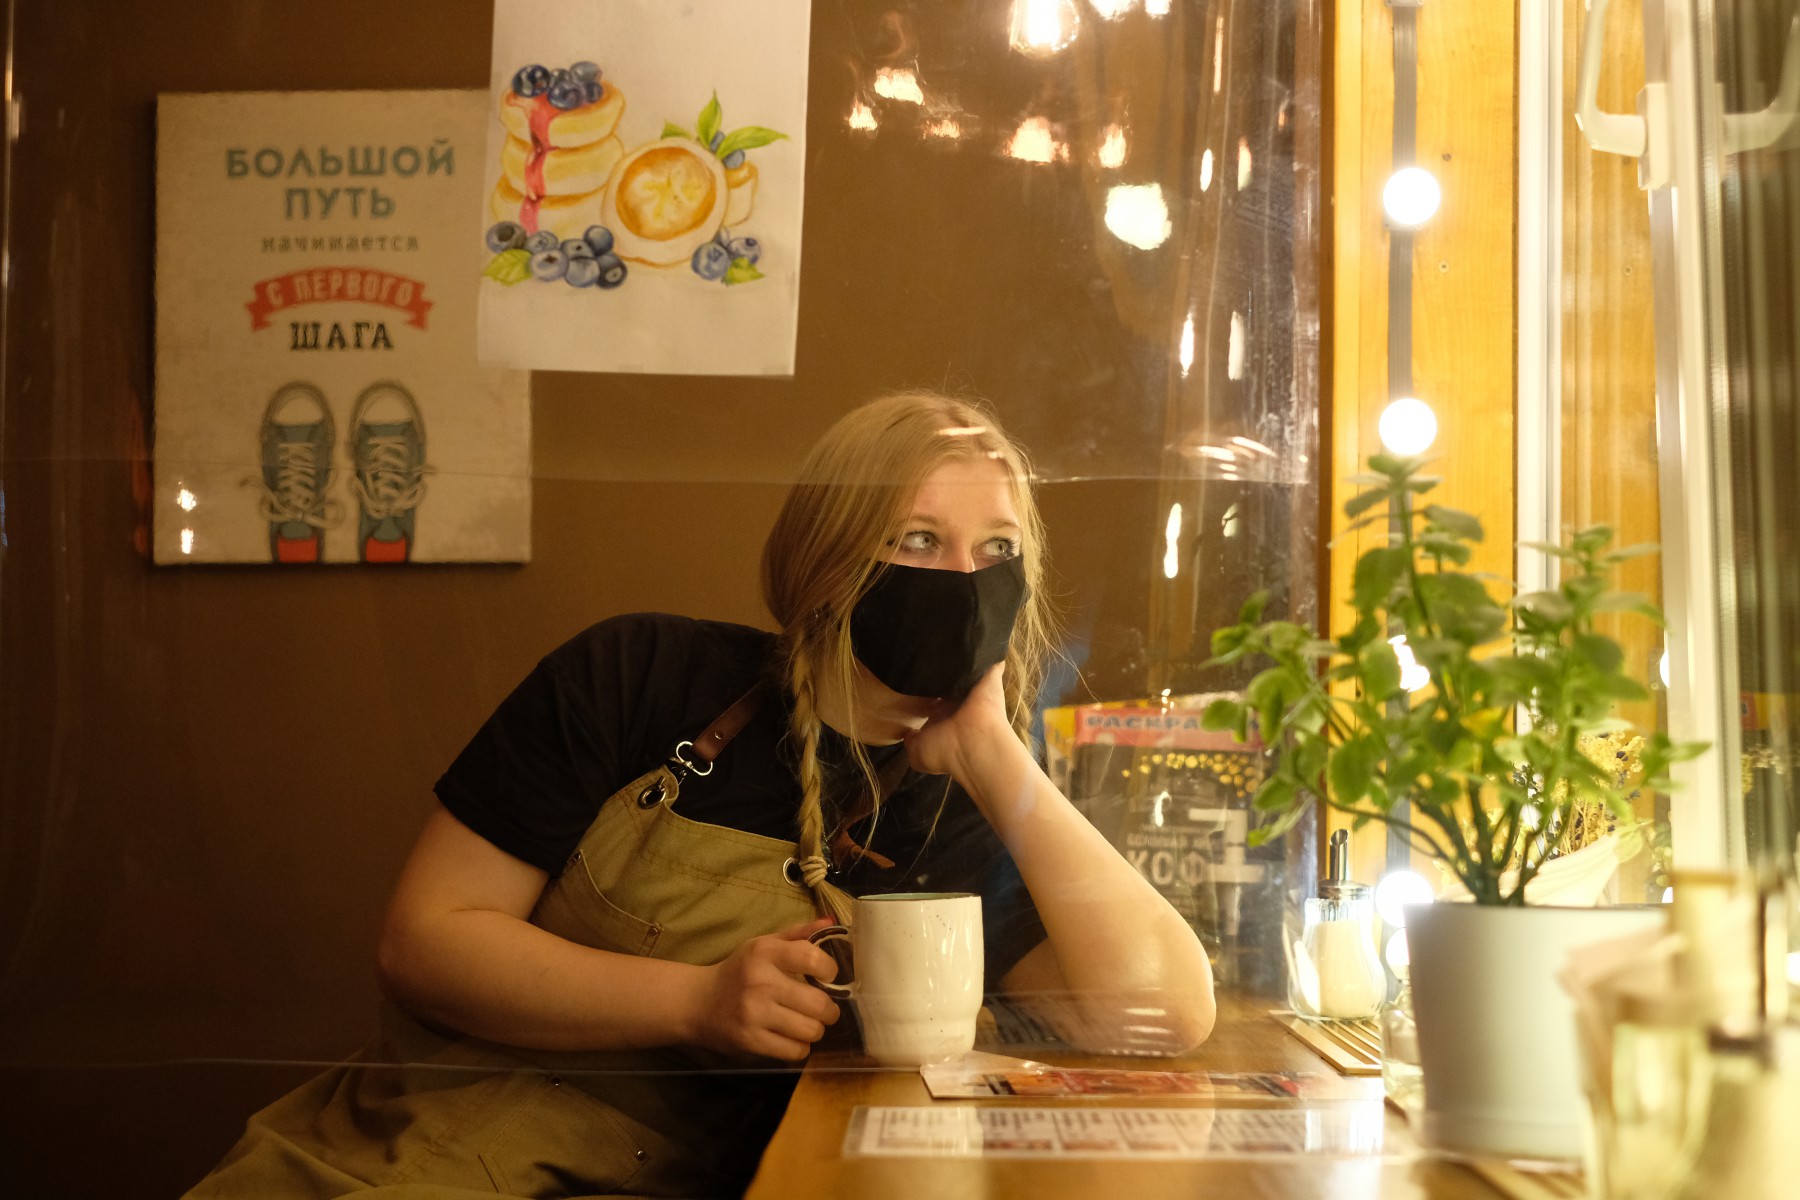 Бариста Валерия Данилова говорит, что посетителей стало заметно меньше — в основном, гости кофейни предпочитают заказывать еду на вынос. Фото Владимира Коцюбы-Белых